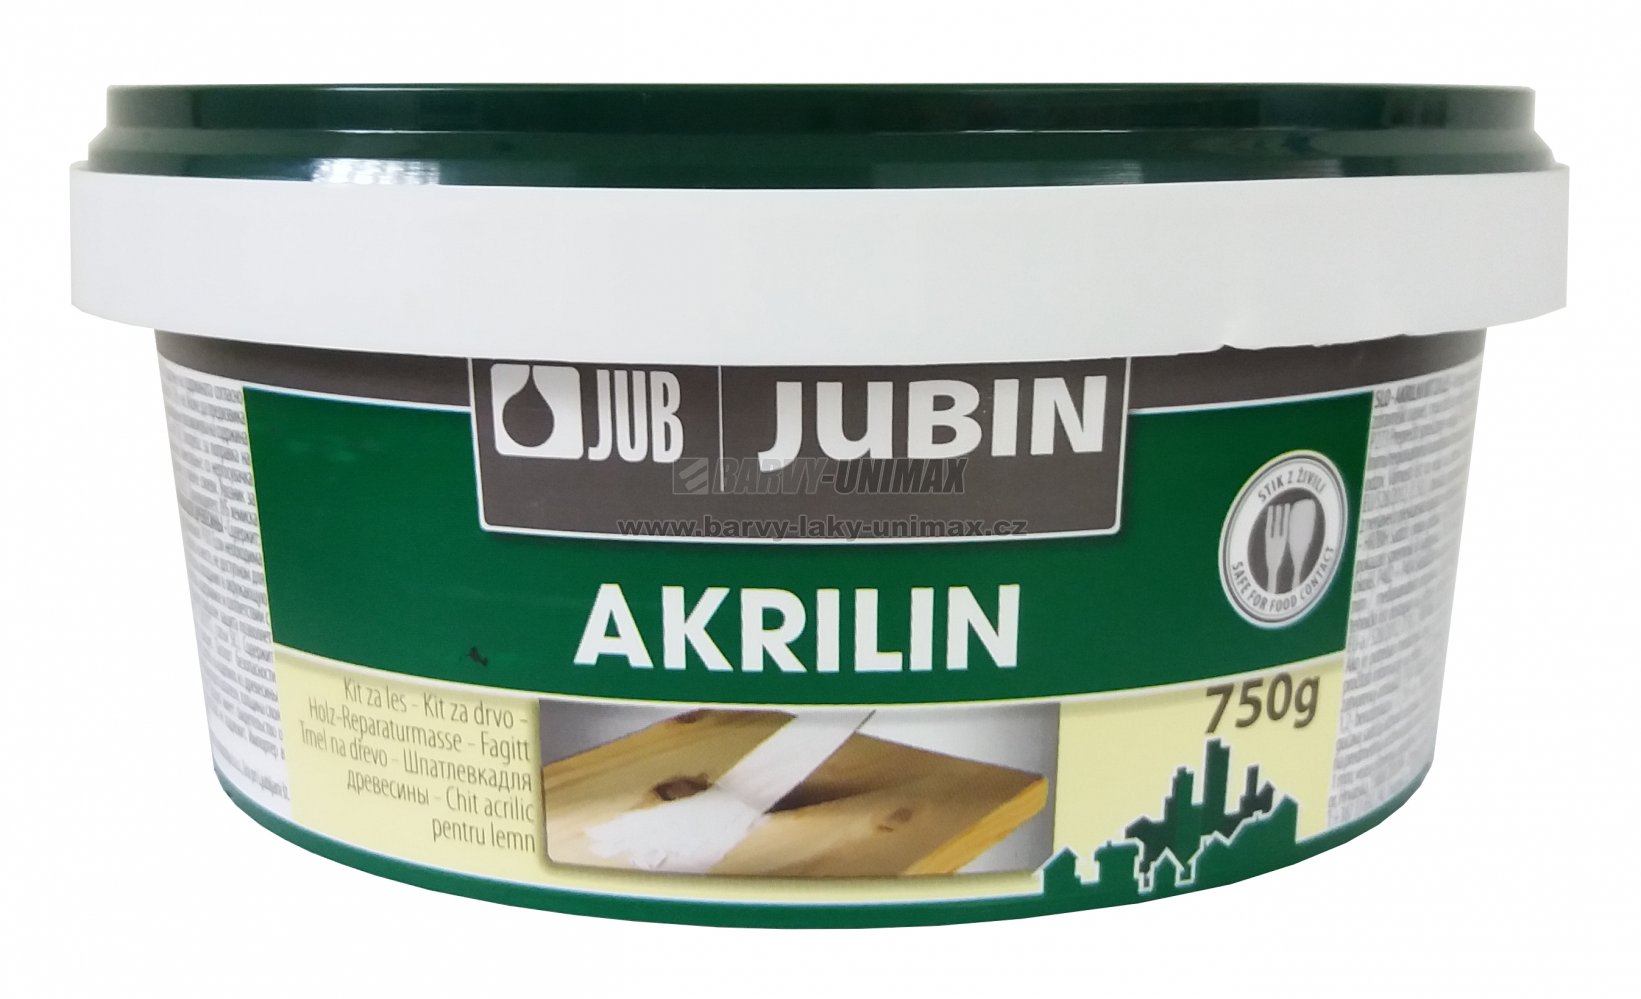 JUB JUBIN Akrilin Dub,150g